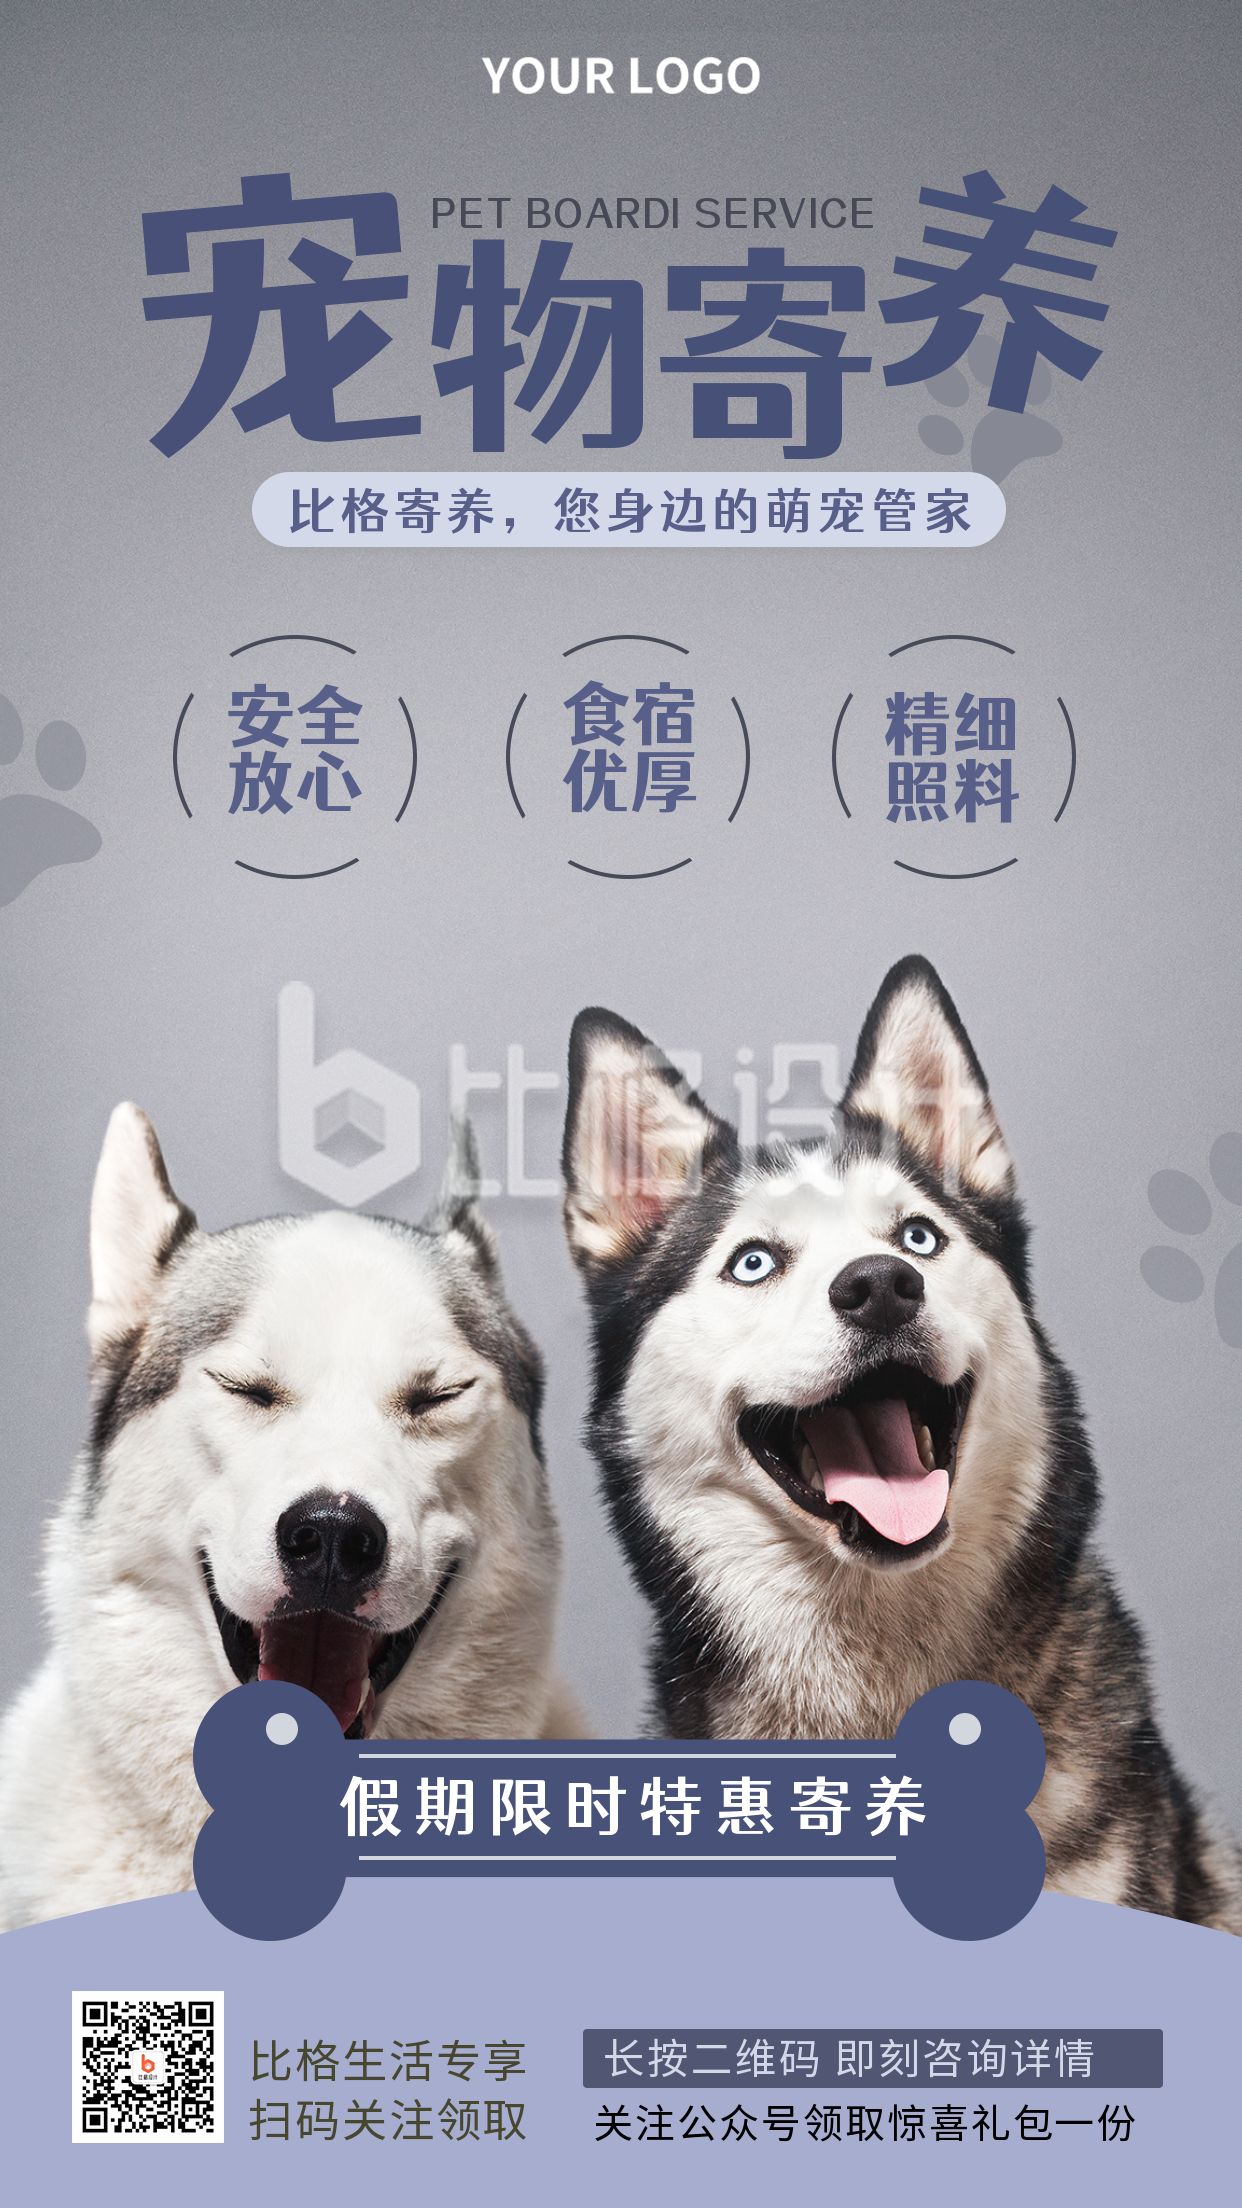 宠物寄养活动优惠推广宣传手机海报